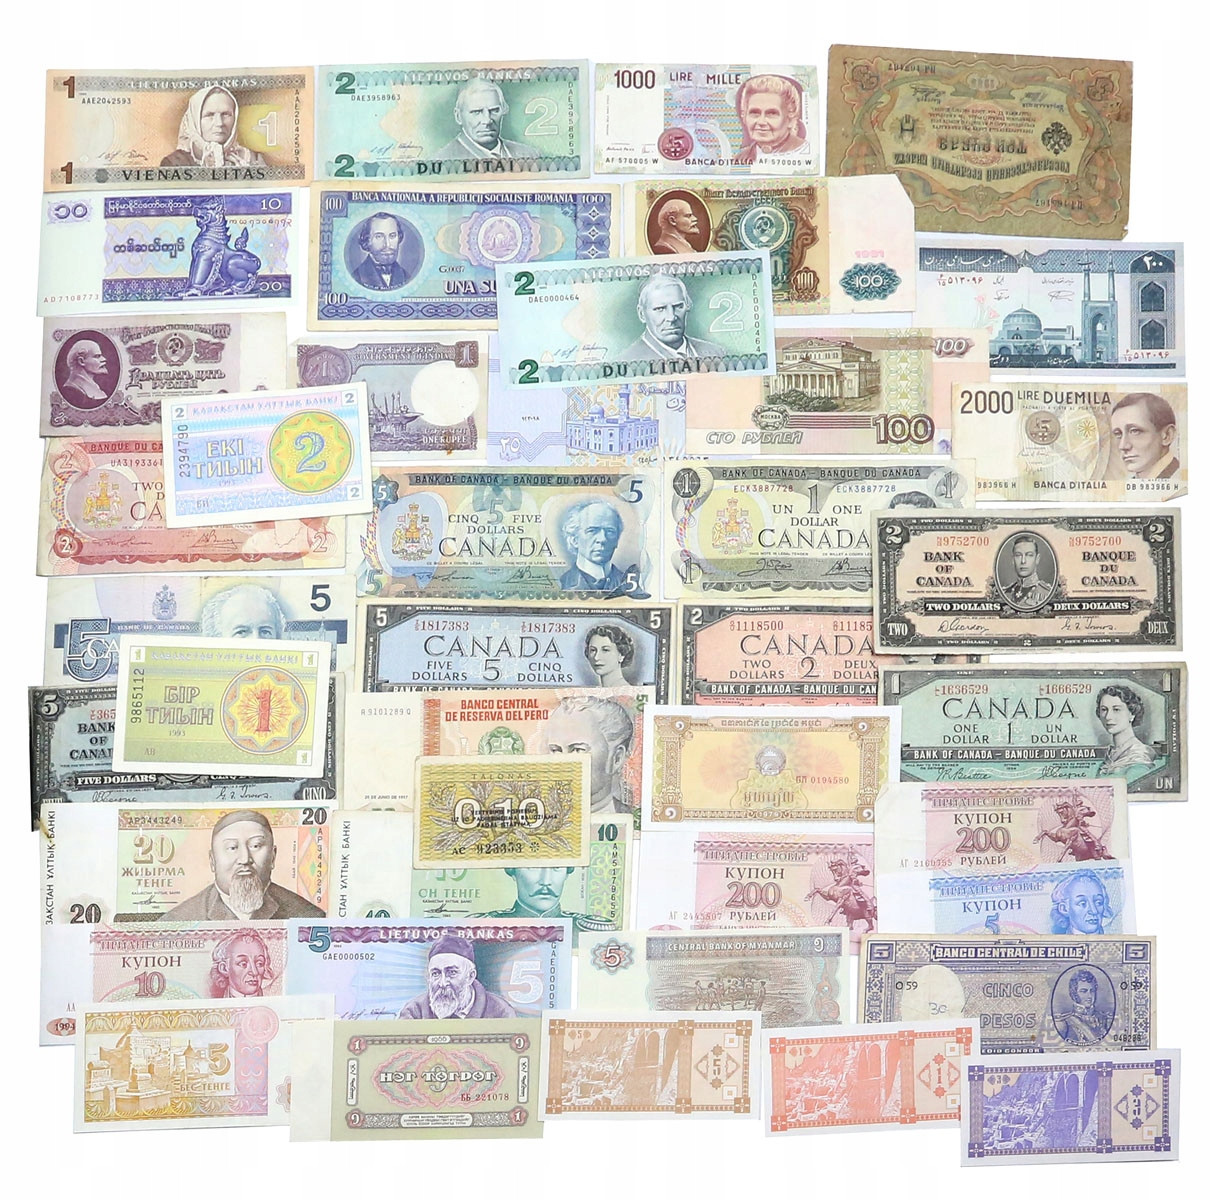 Świat, banknoty, zestaw około 115 sztuk